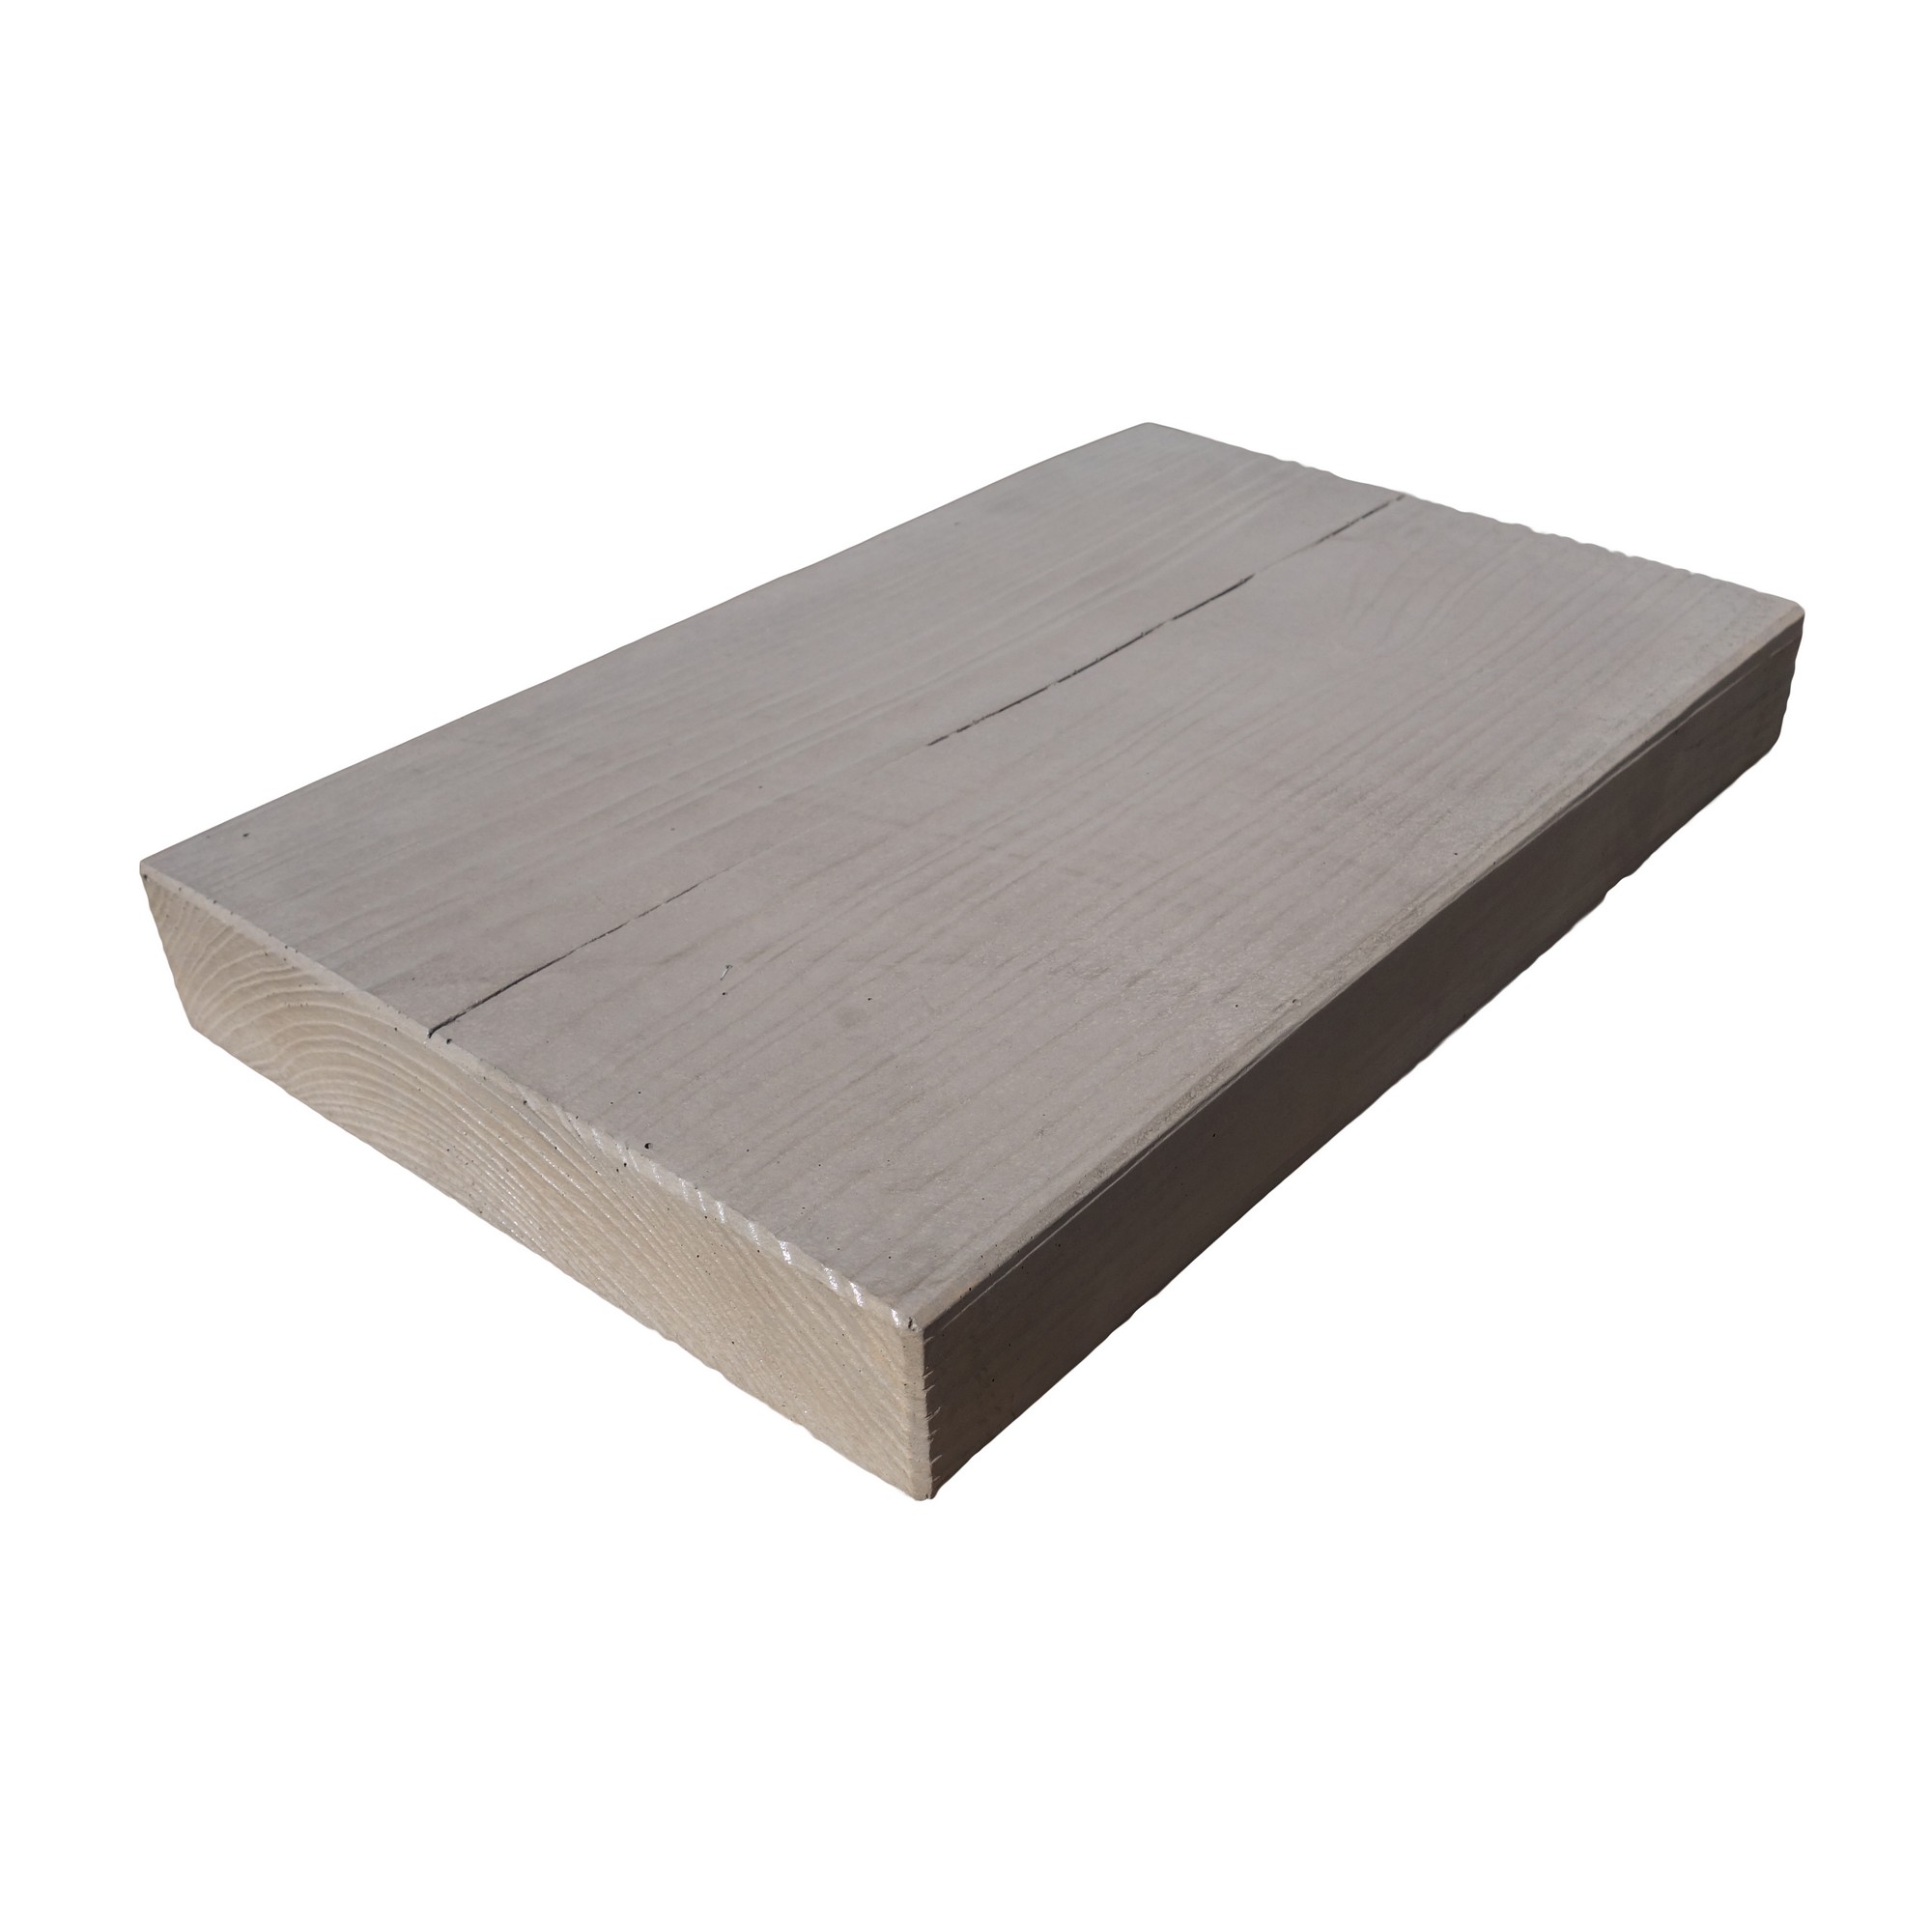 Dlažba betonová Presbeton BARK 11 reliéfní prkno hnědá 250×395×50 mm PRESBETON